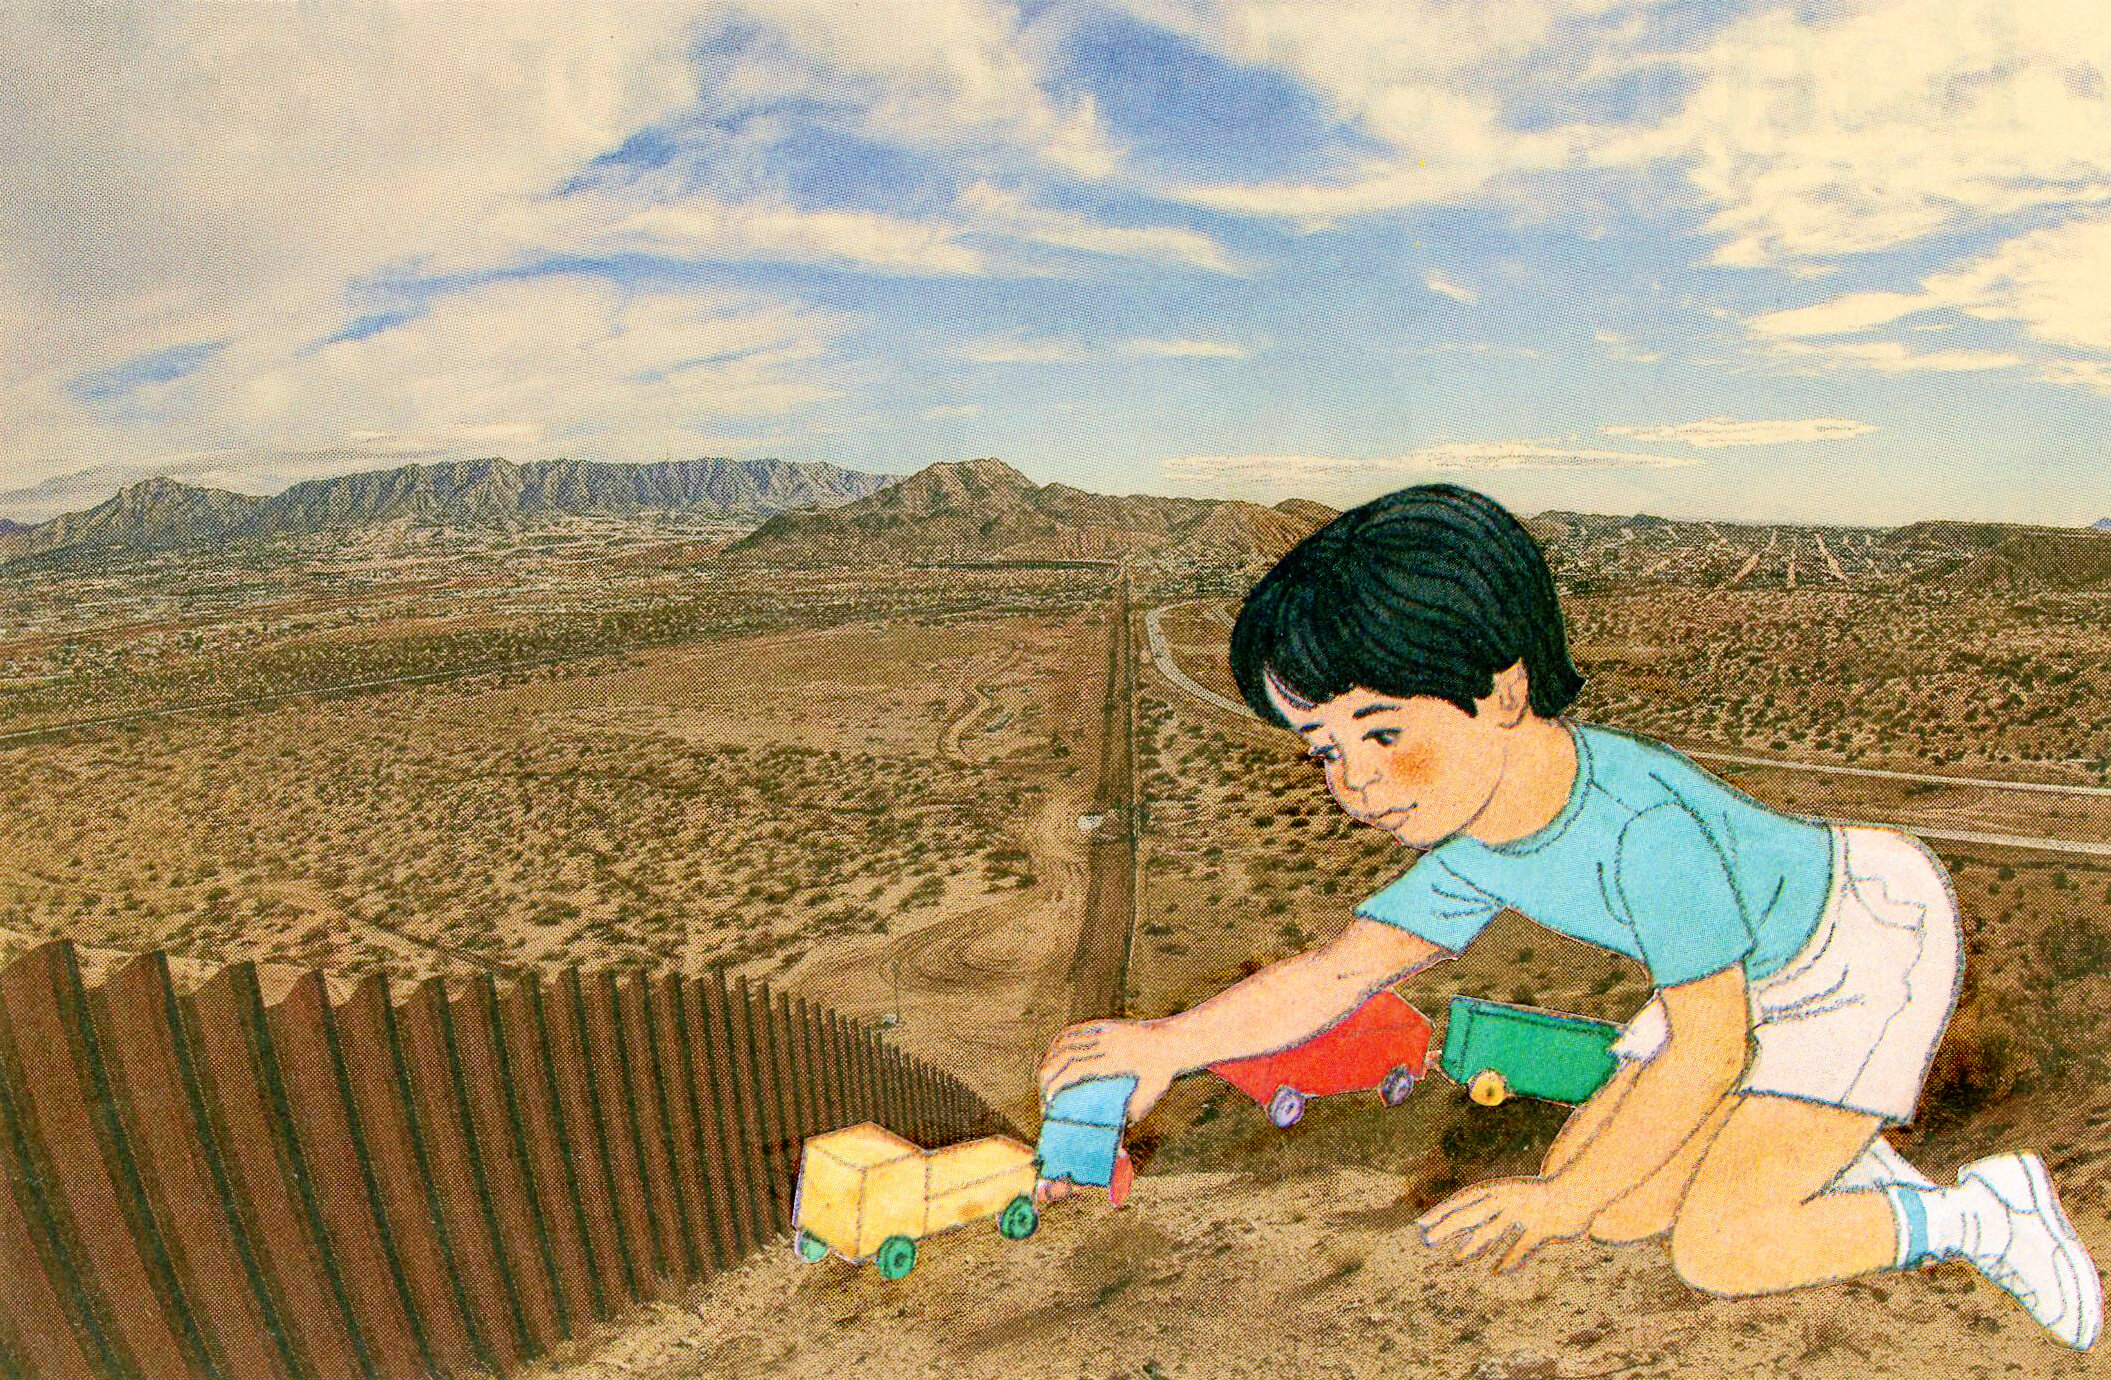 Benito at the Border